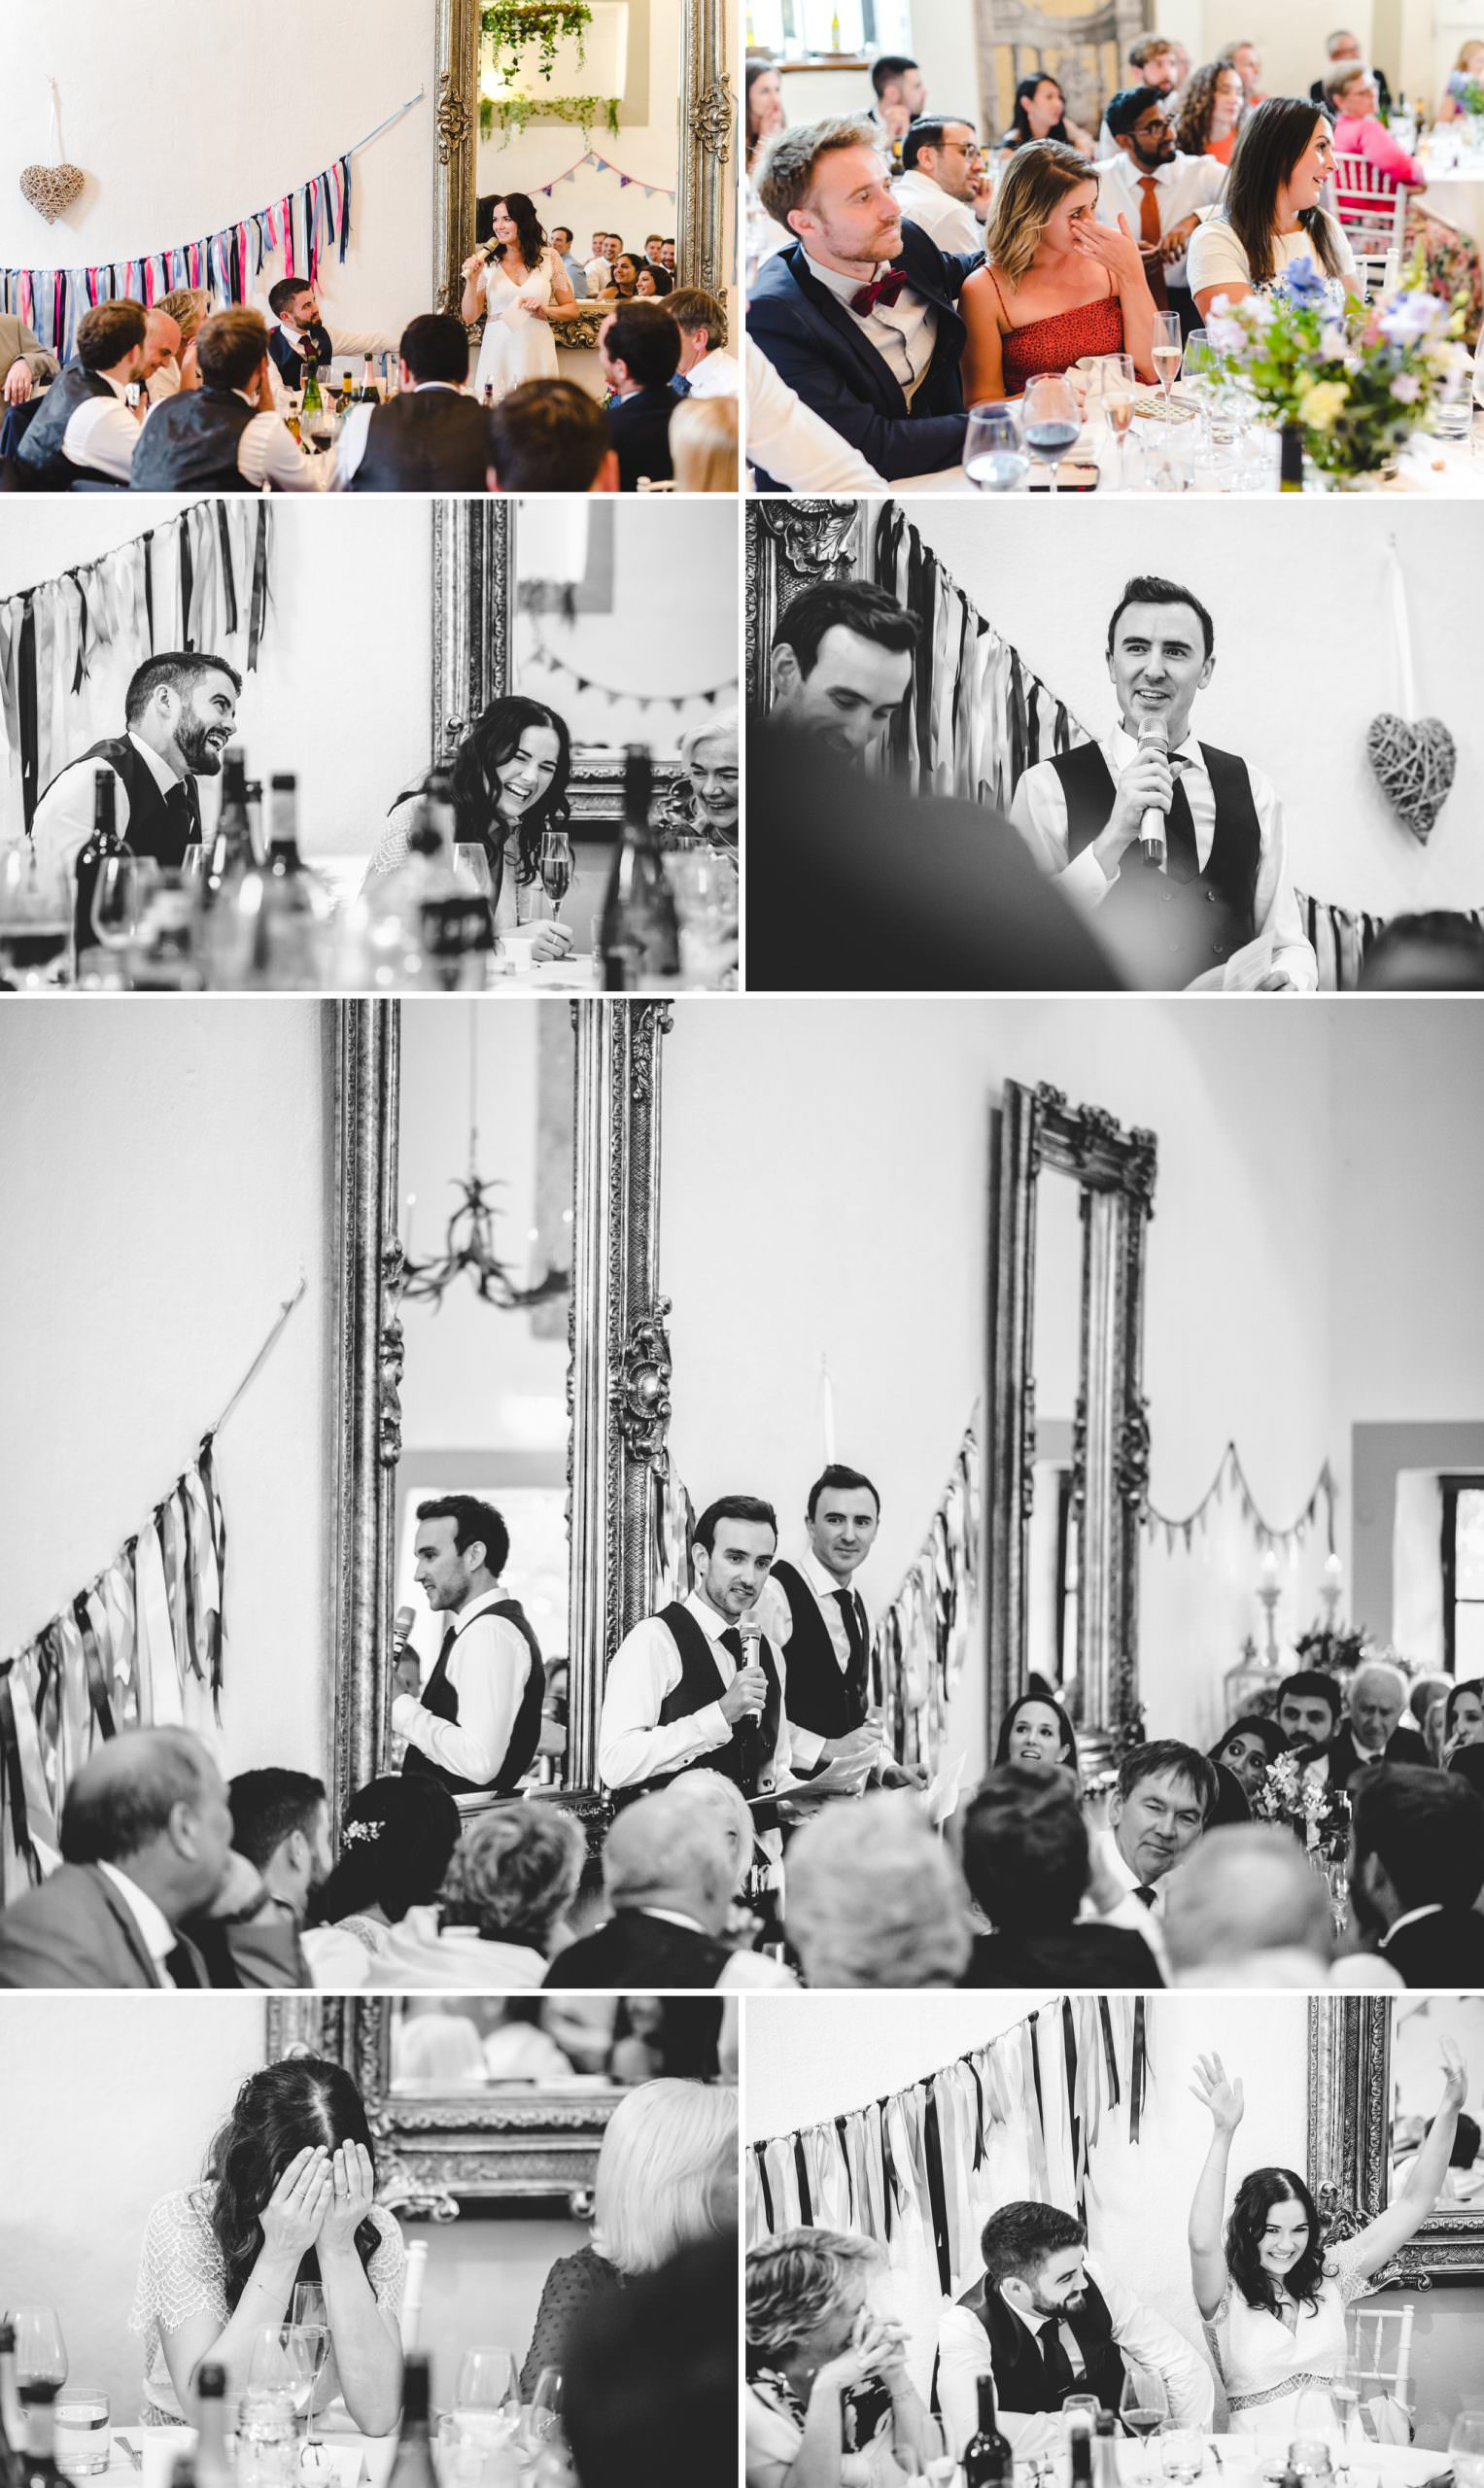 Wedding speeches at Merriscourt